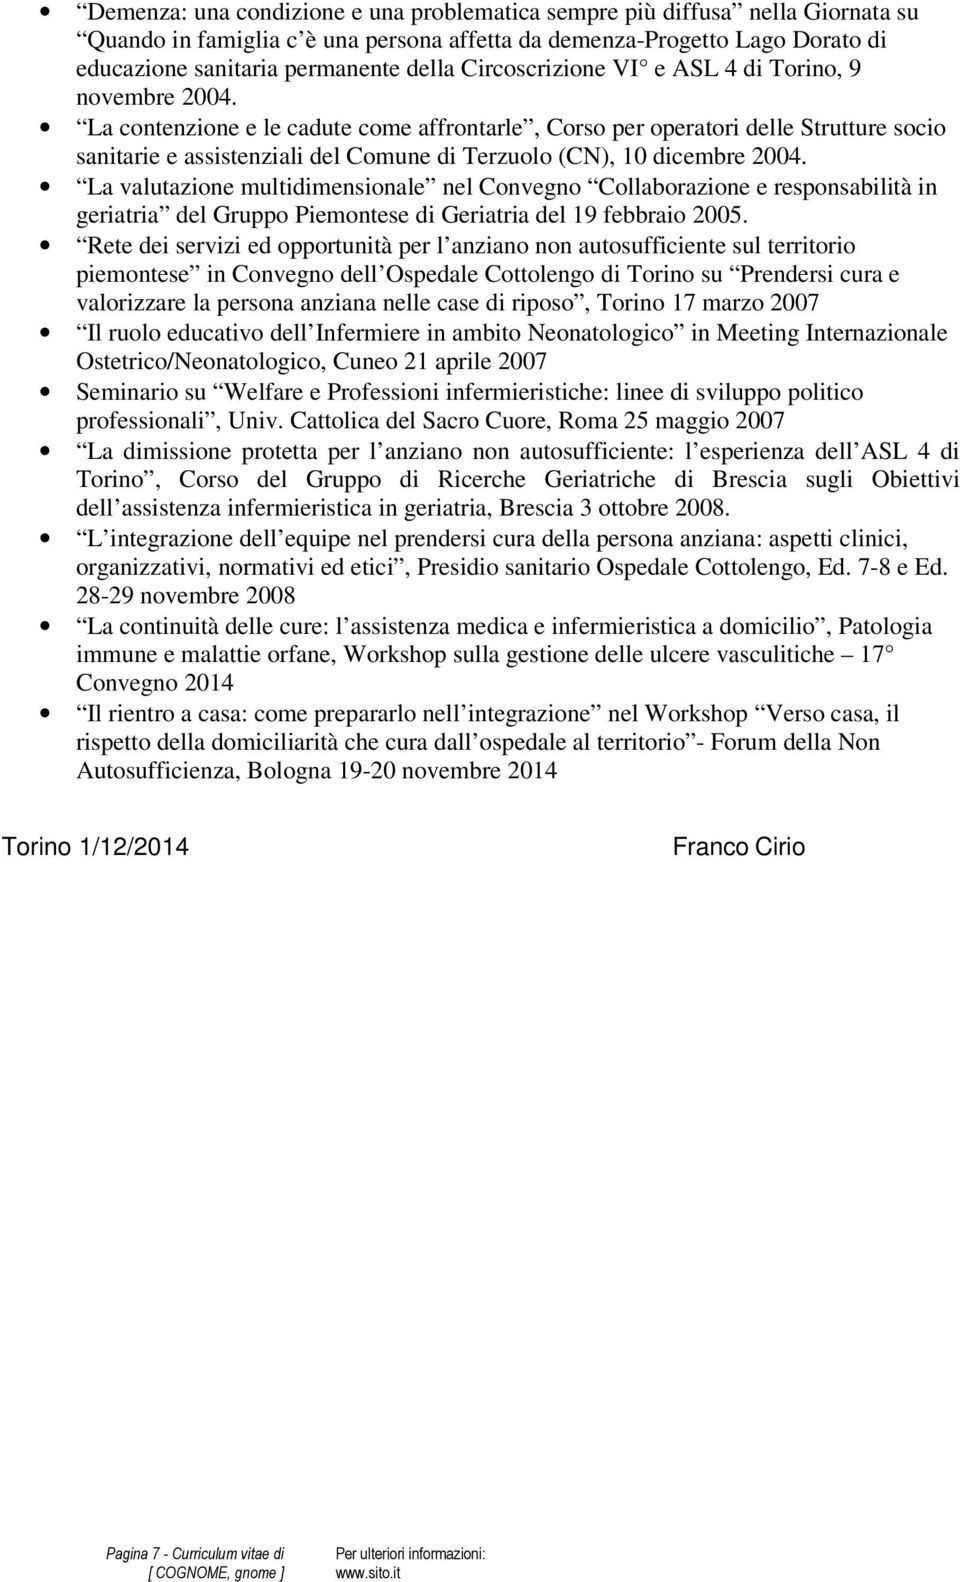 La contenzione e le cadute come affrontarle, Corso per operatori delle Strutture socio sanitarie e assistenziali del Comune di Terzuolo (CN), 10 dicembre 2004.